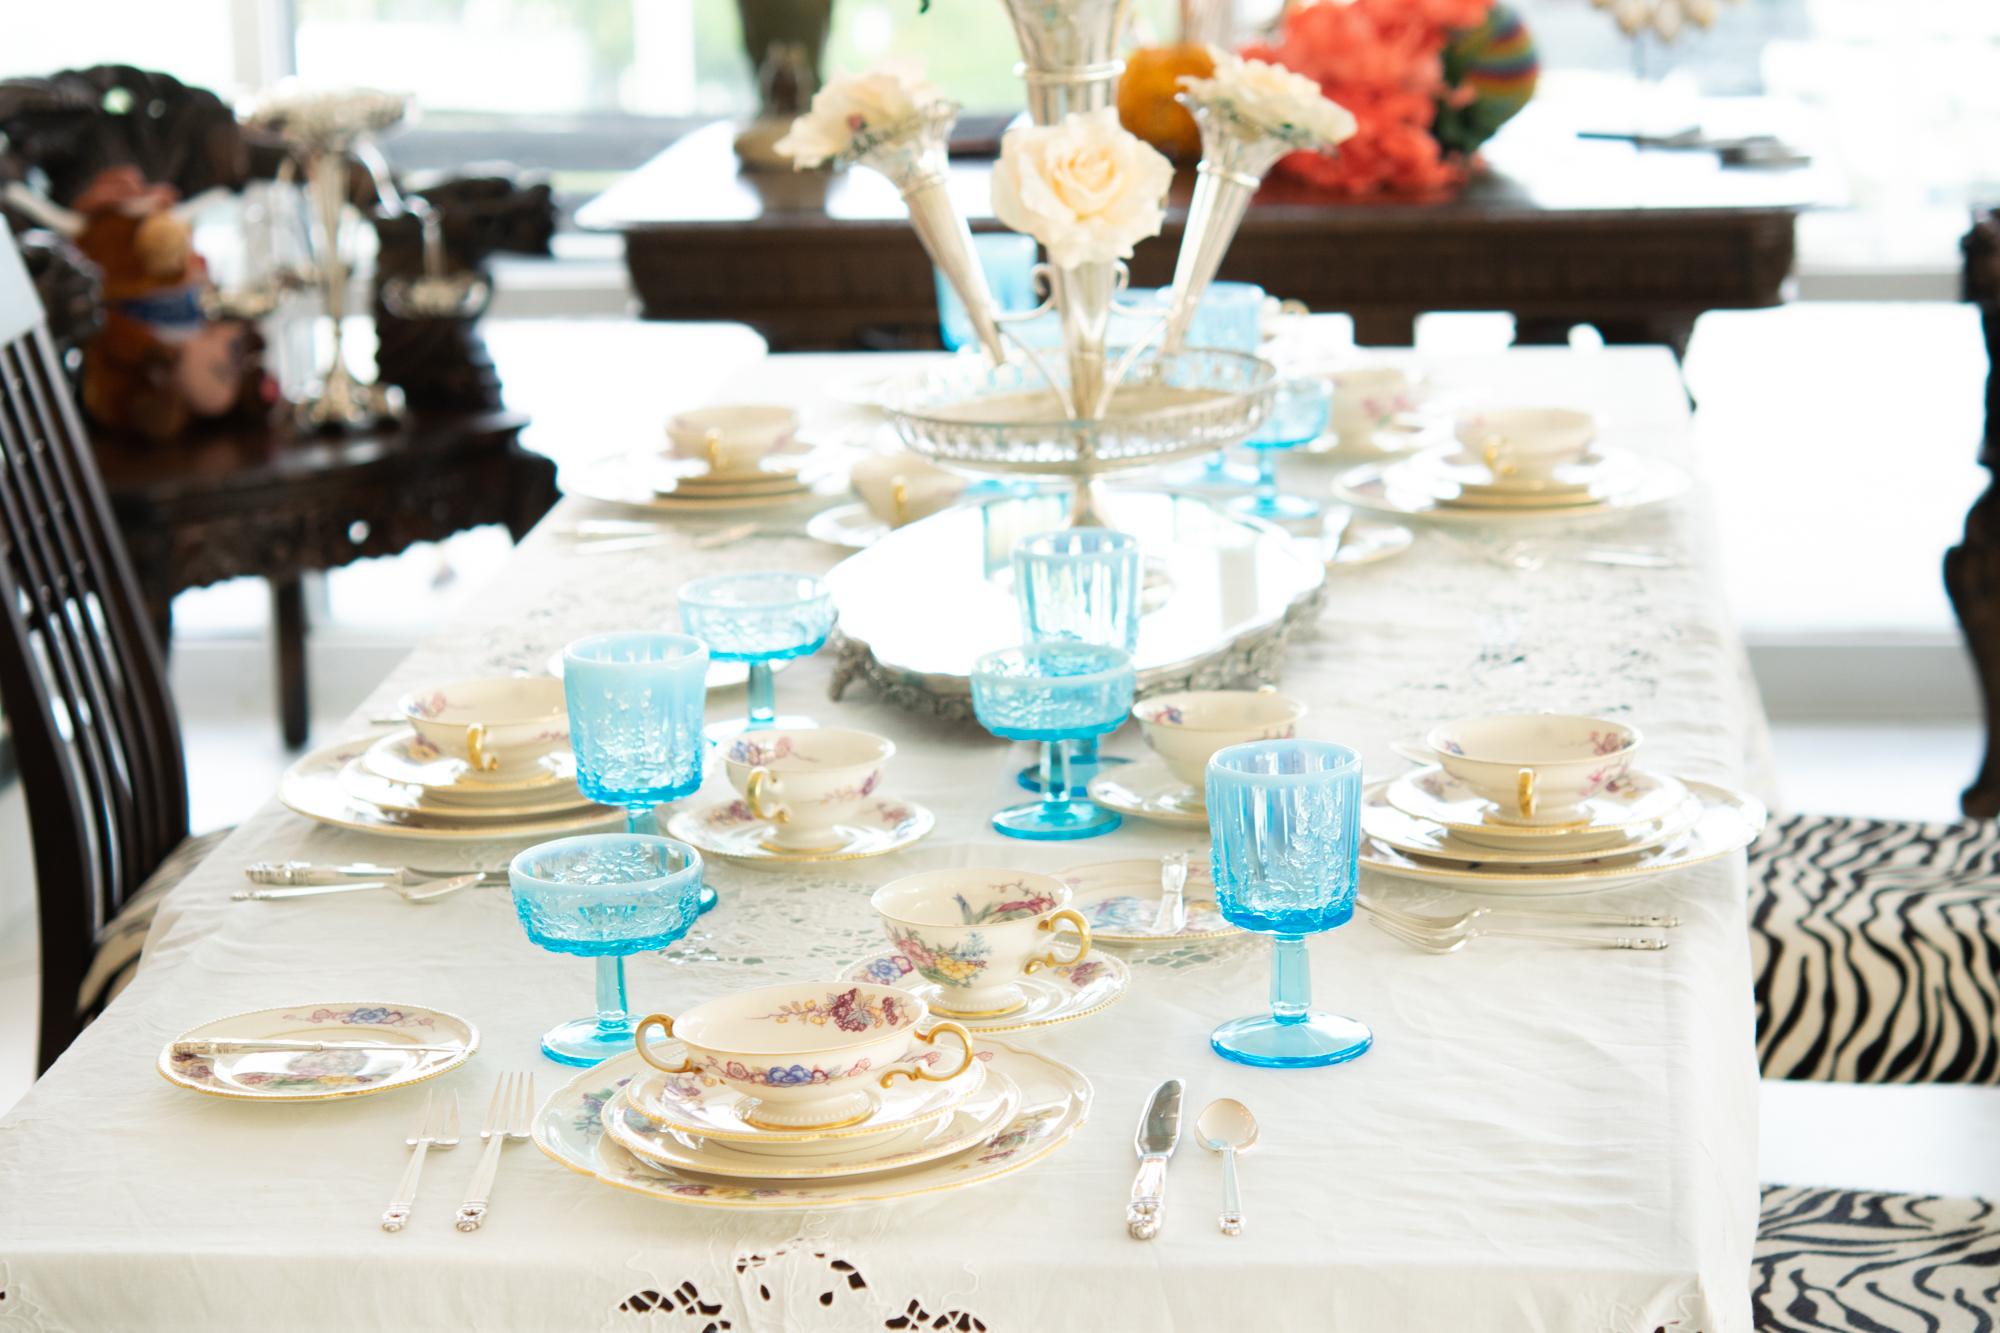 Ensemble de 18 gobelets vintage gradués en verre opalescent à fond bleu (10 pièces) avec sorbets ou champagnes assortis (8 pièces). Ces gobelets en verre à panneaux bleus opalescents comportent neuf panneaux avec trois grappes de raisin texturées